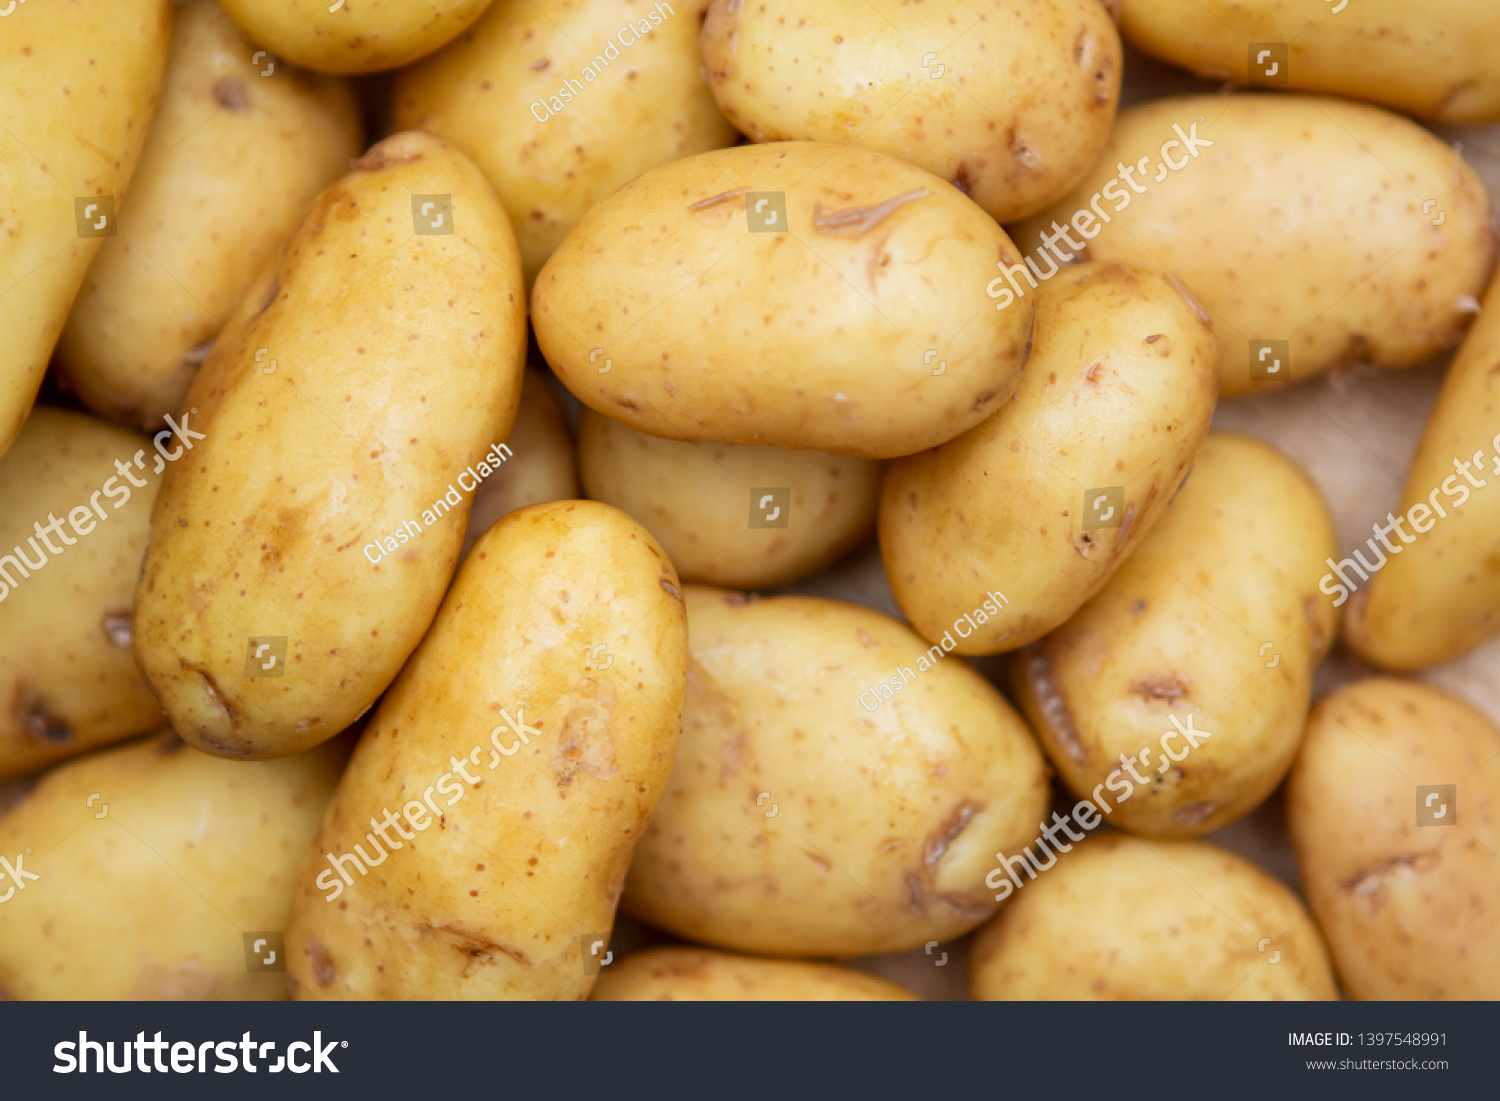 how to grow jersey royal potatoes